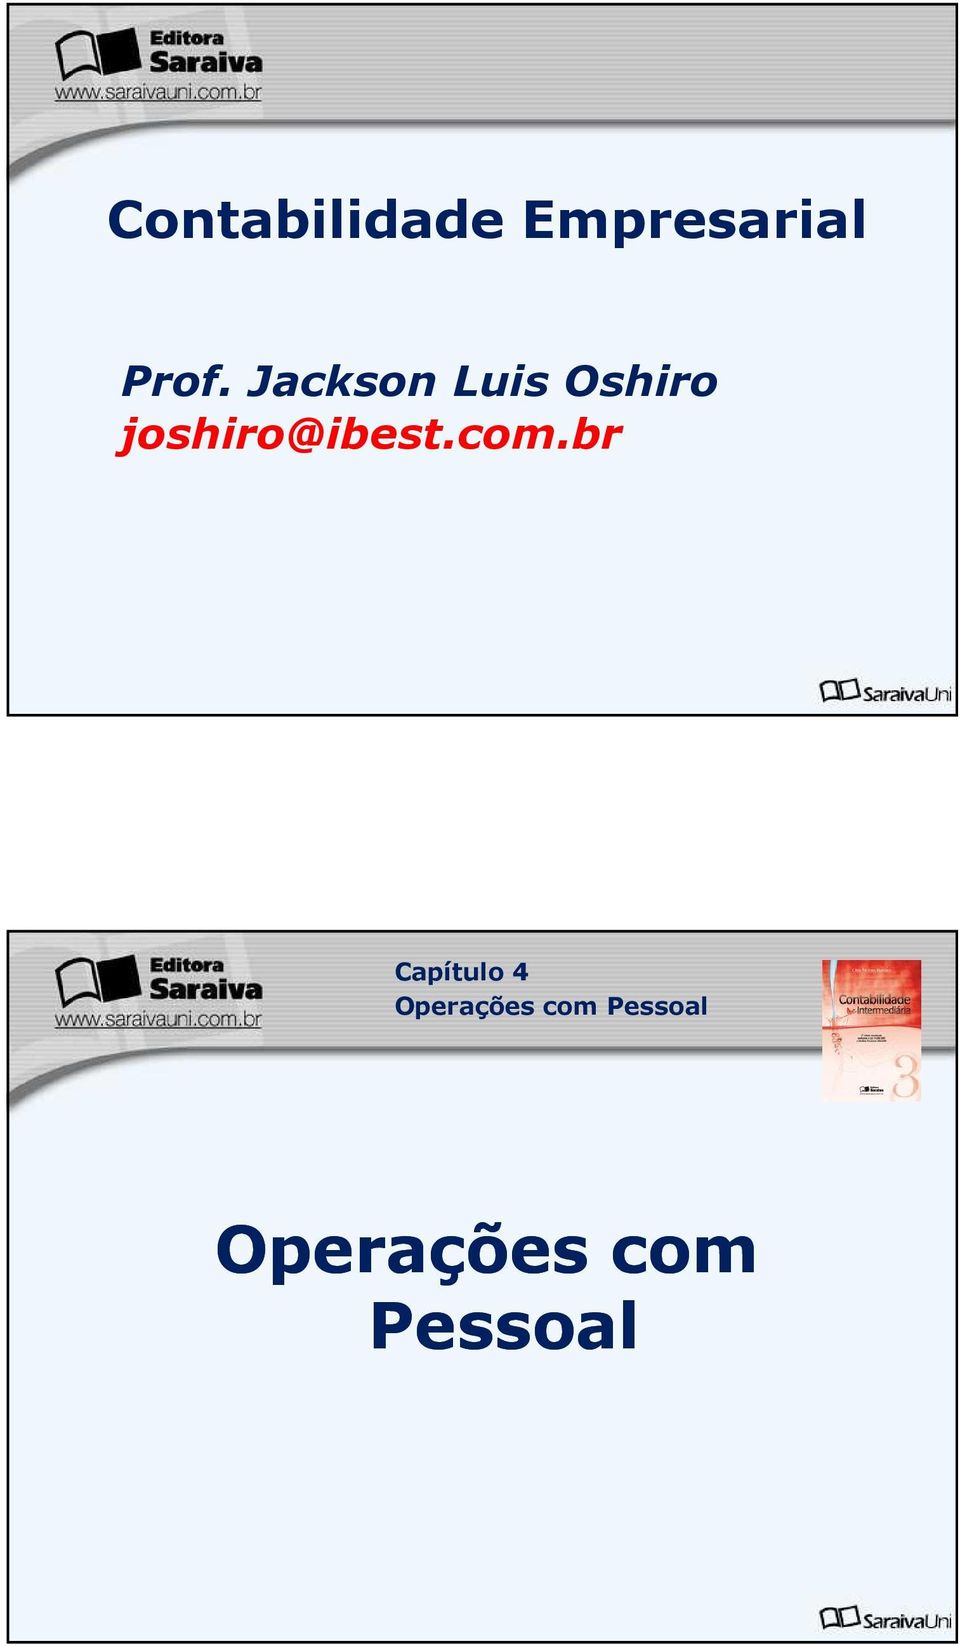 Jackson Luis Oshiro